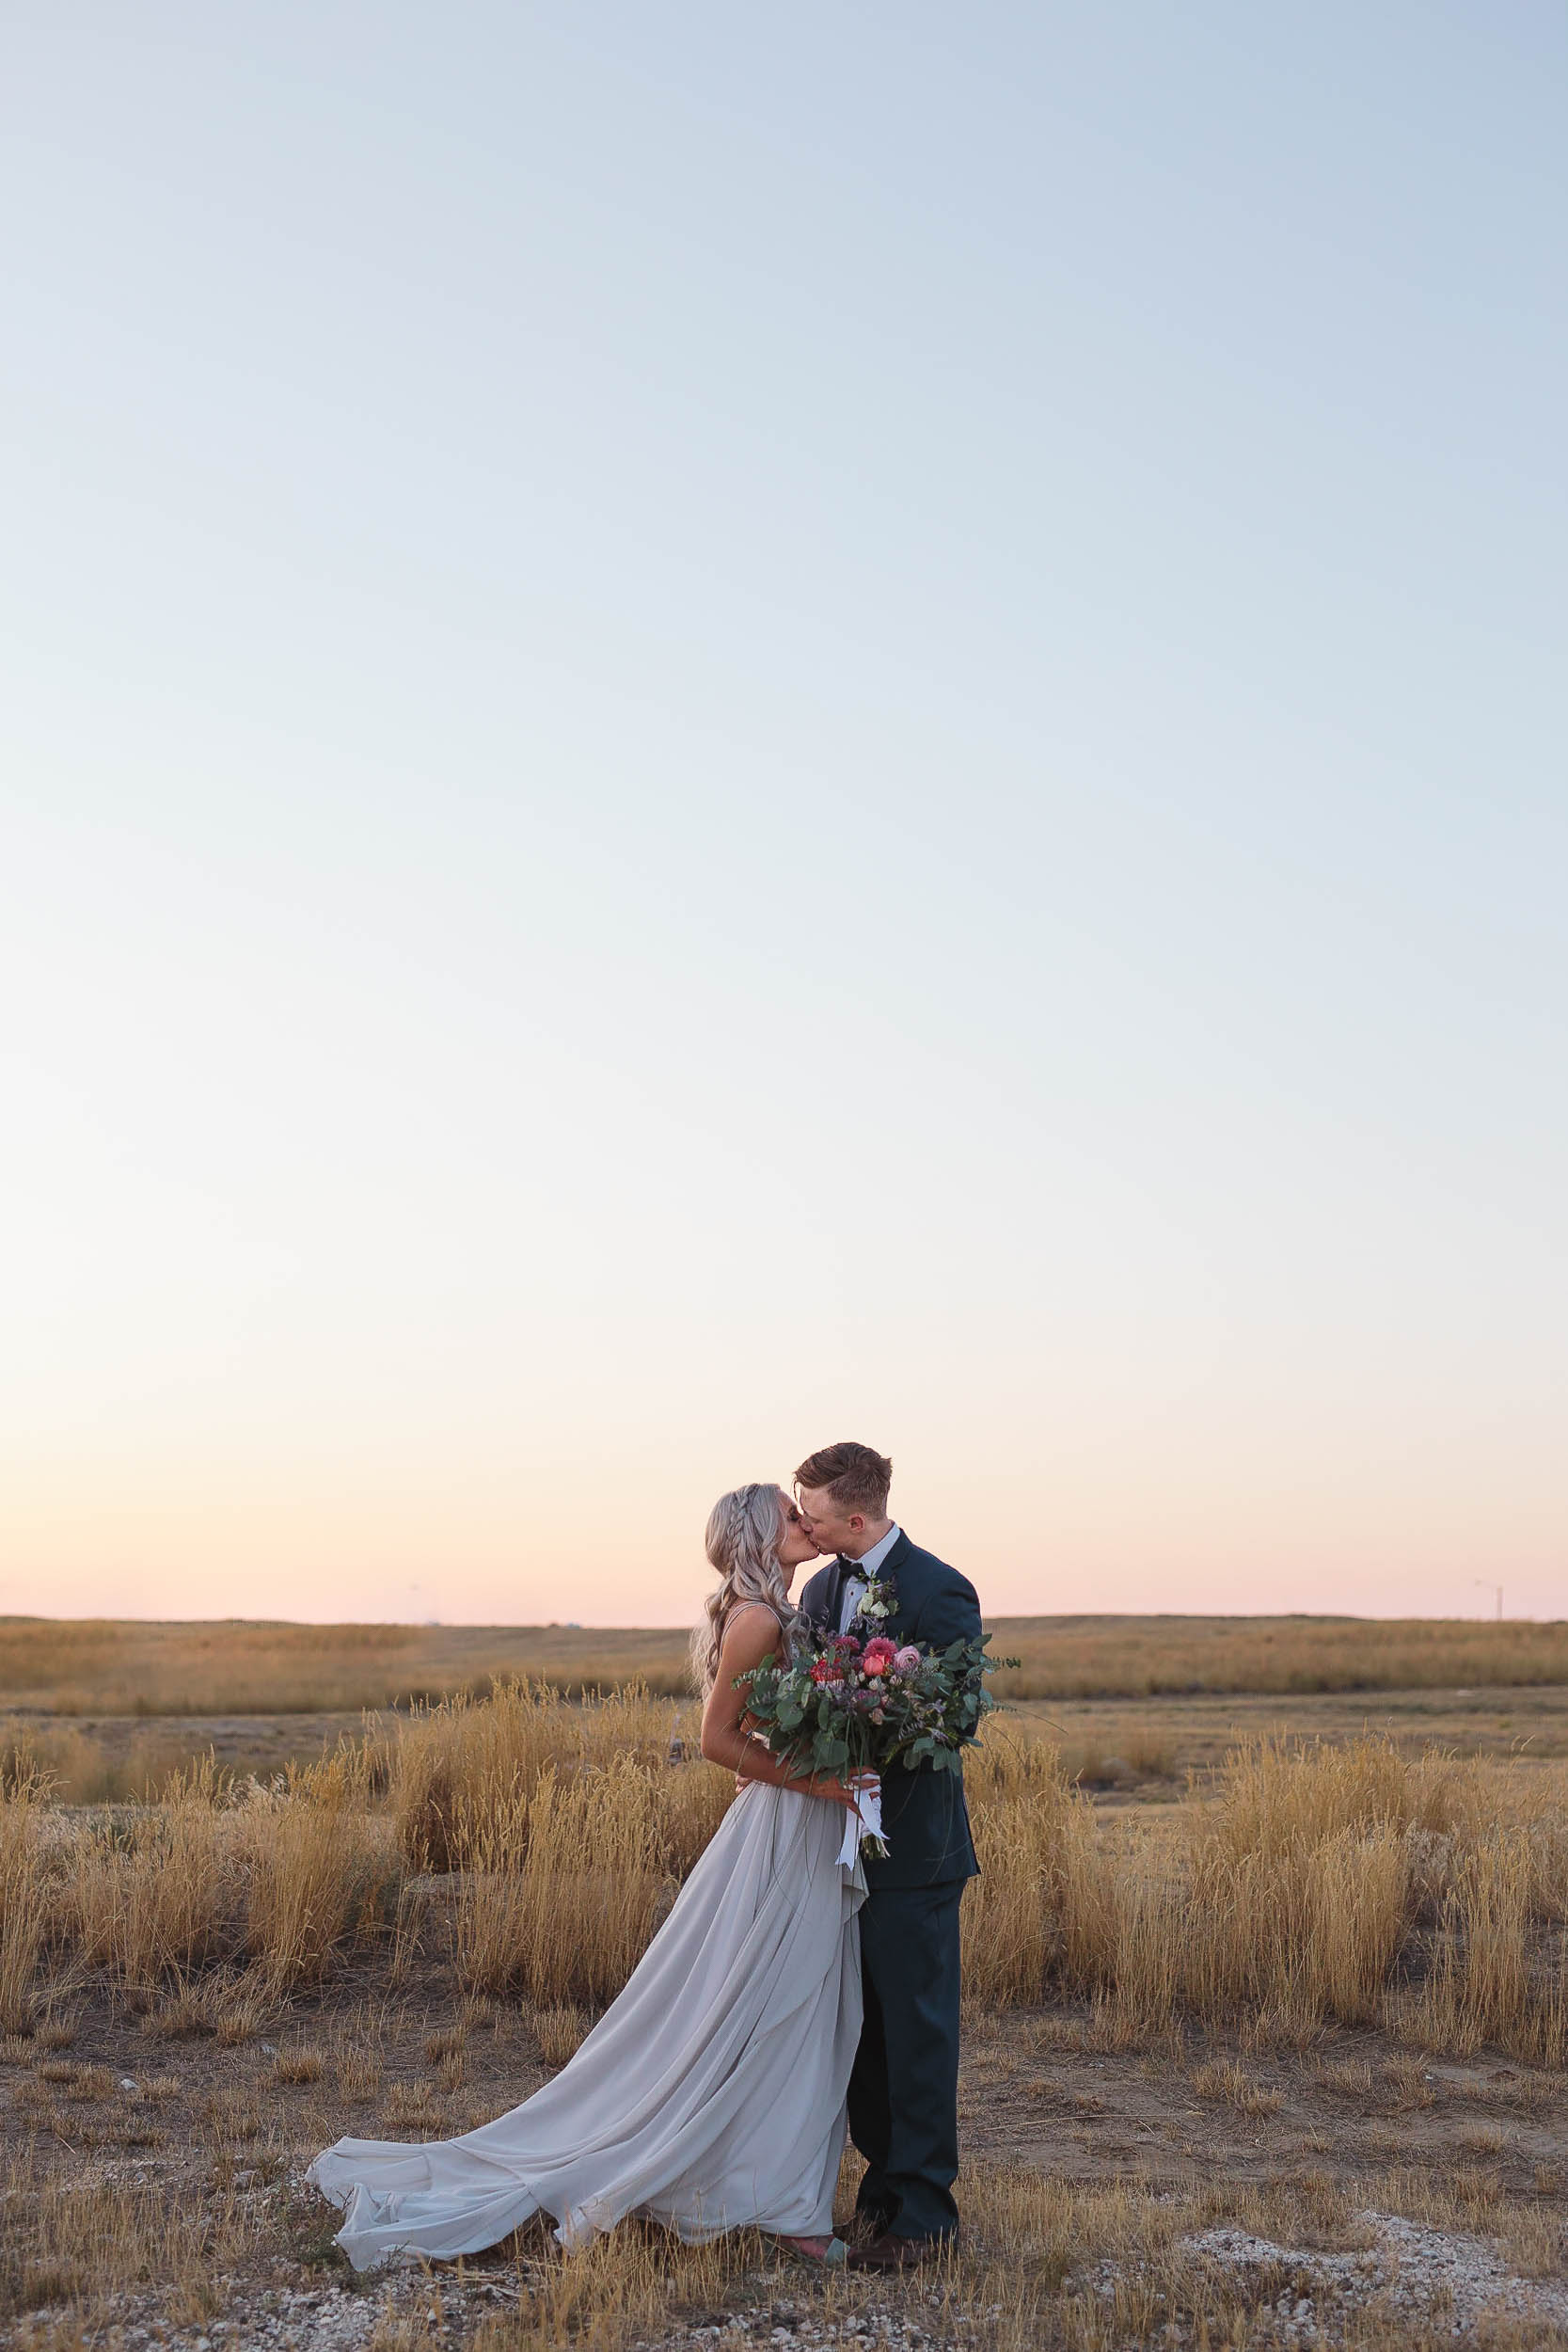 Wyoming plains at dusk wedding portrait